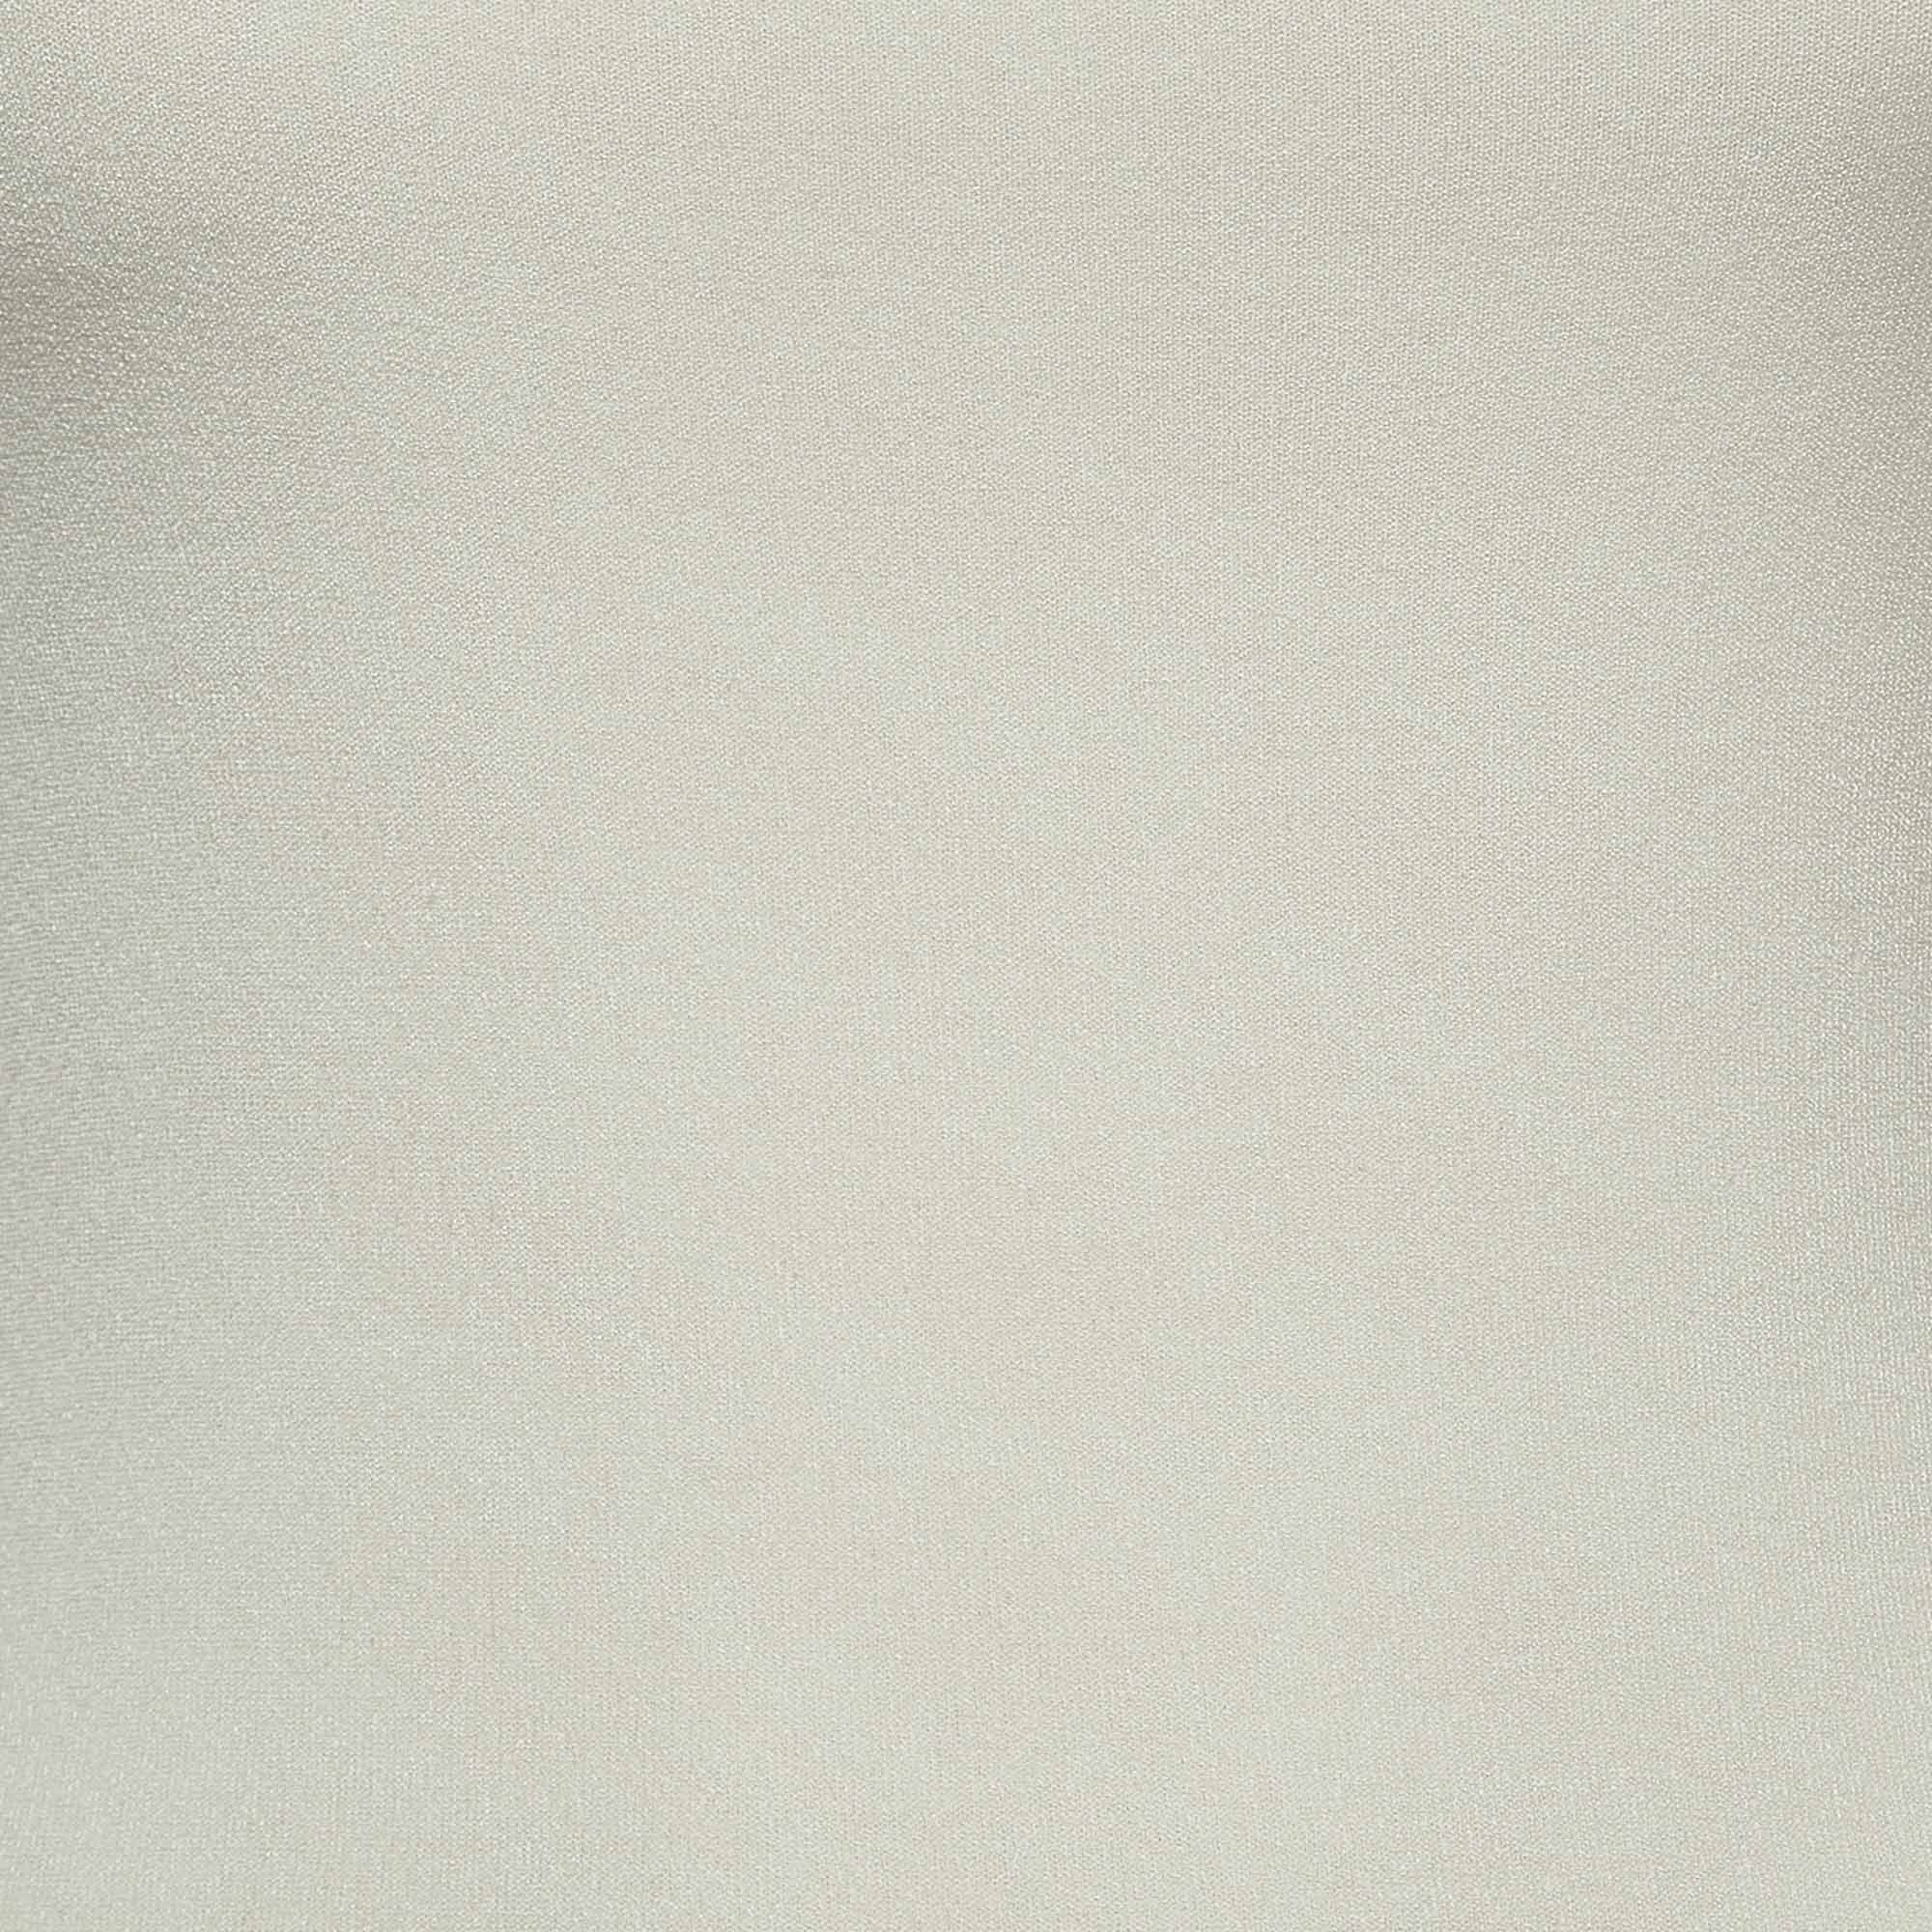 Fendi Off-White Knit Cut-out Logo Detail Mini Sheath Dress S